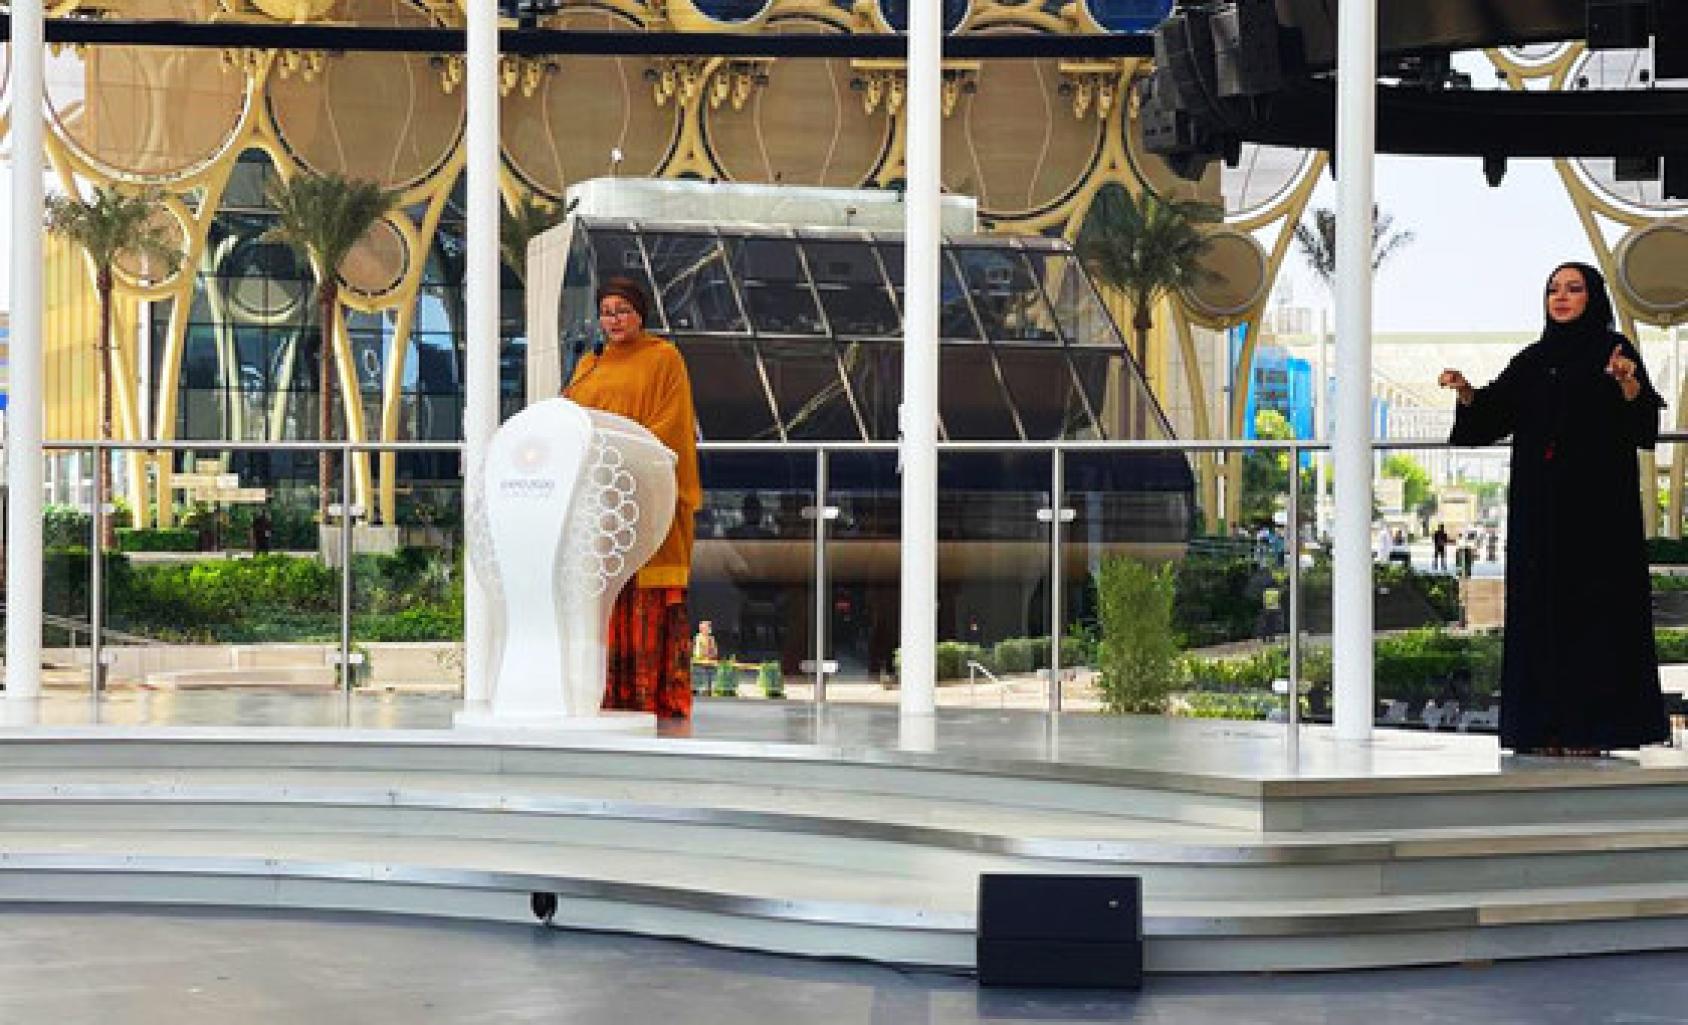 La Vicesecretaria General Amina Mohammed aparece en el escenario detrás de un podio, mientras un intérprete de lengua de signos se sitúa a su derecha.